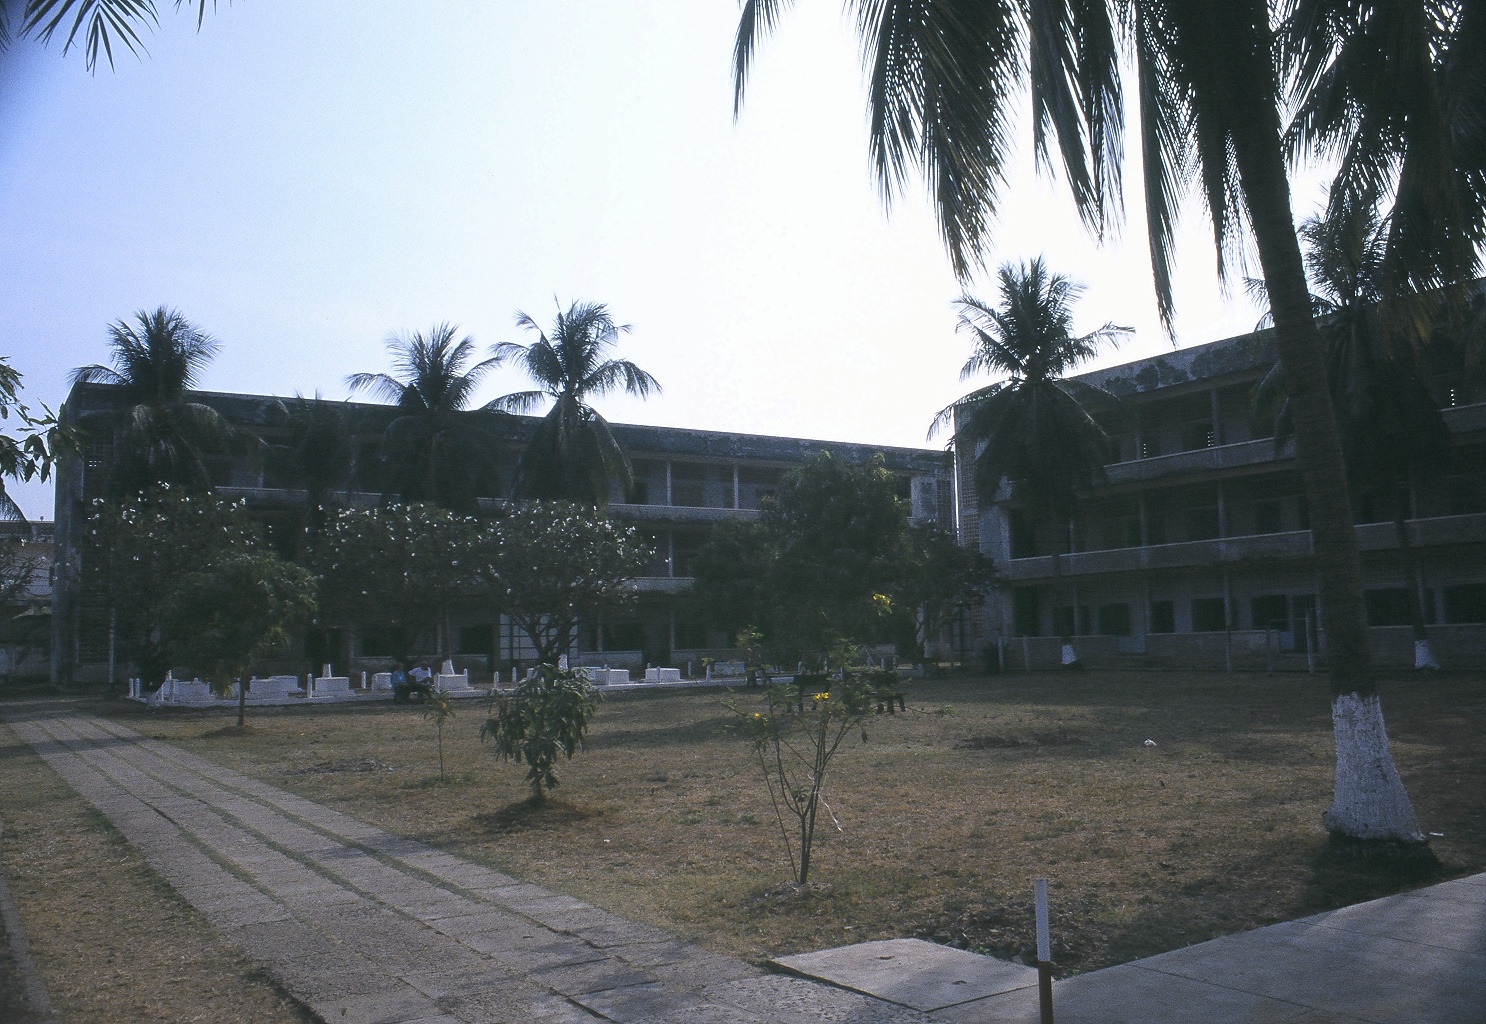 S-21 (Tuol Sleng Detention Centre)